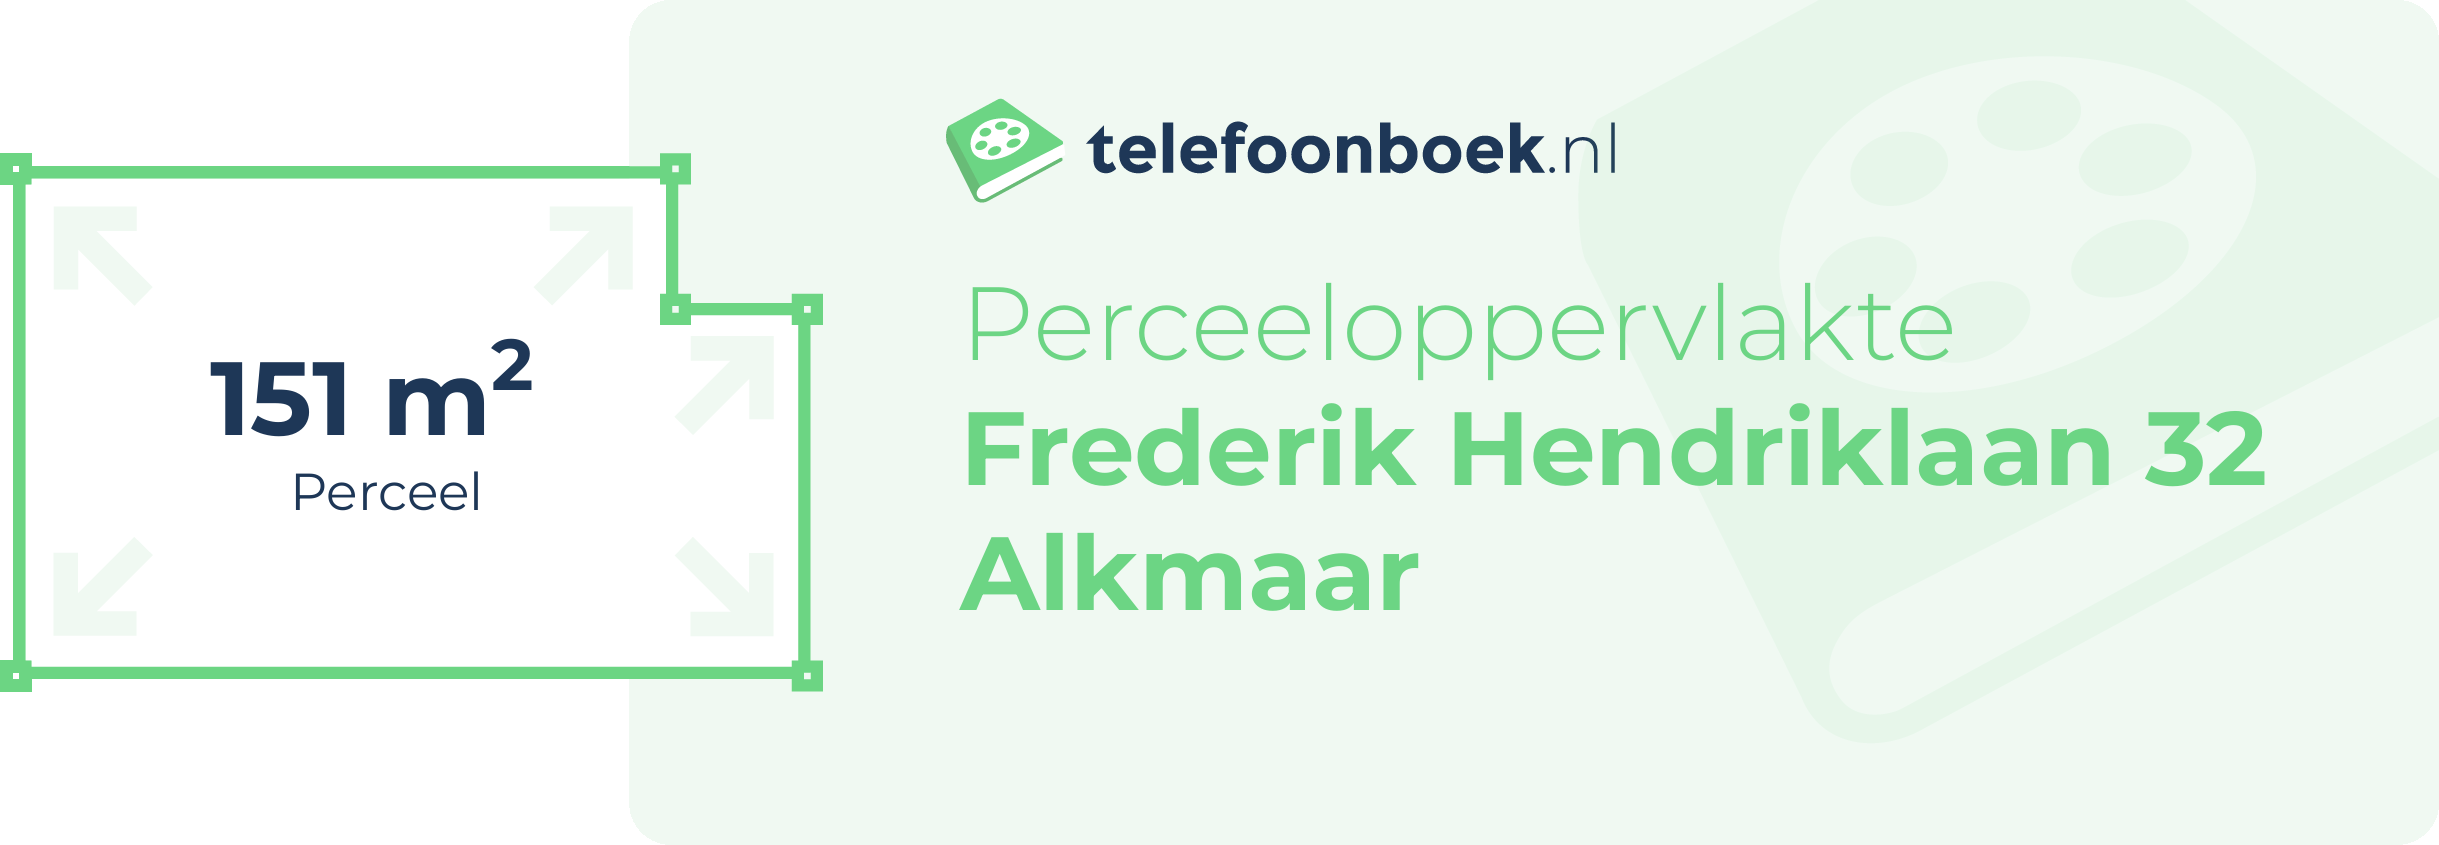 Perceeloppervlakte Frederik Hendriklaan 32 Alkmaar